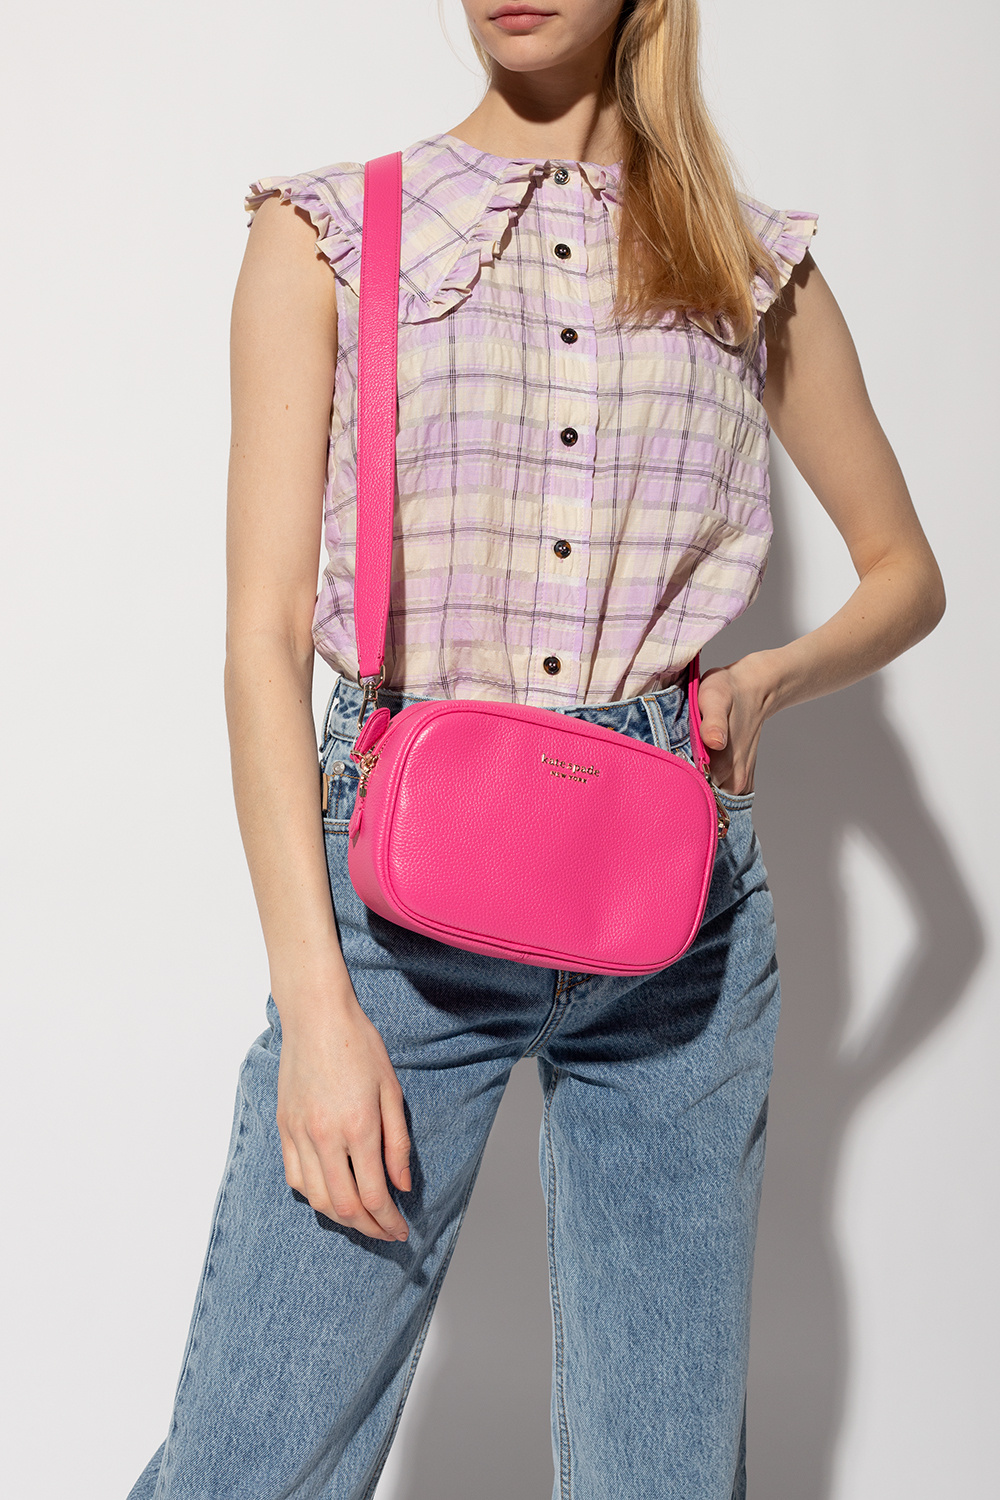 IetpShops Germany - 'Astrid' shoulder bag CLO Kate Spade - braided  strap-detail shoulder bag CLO Nero